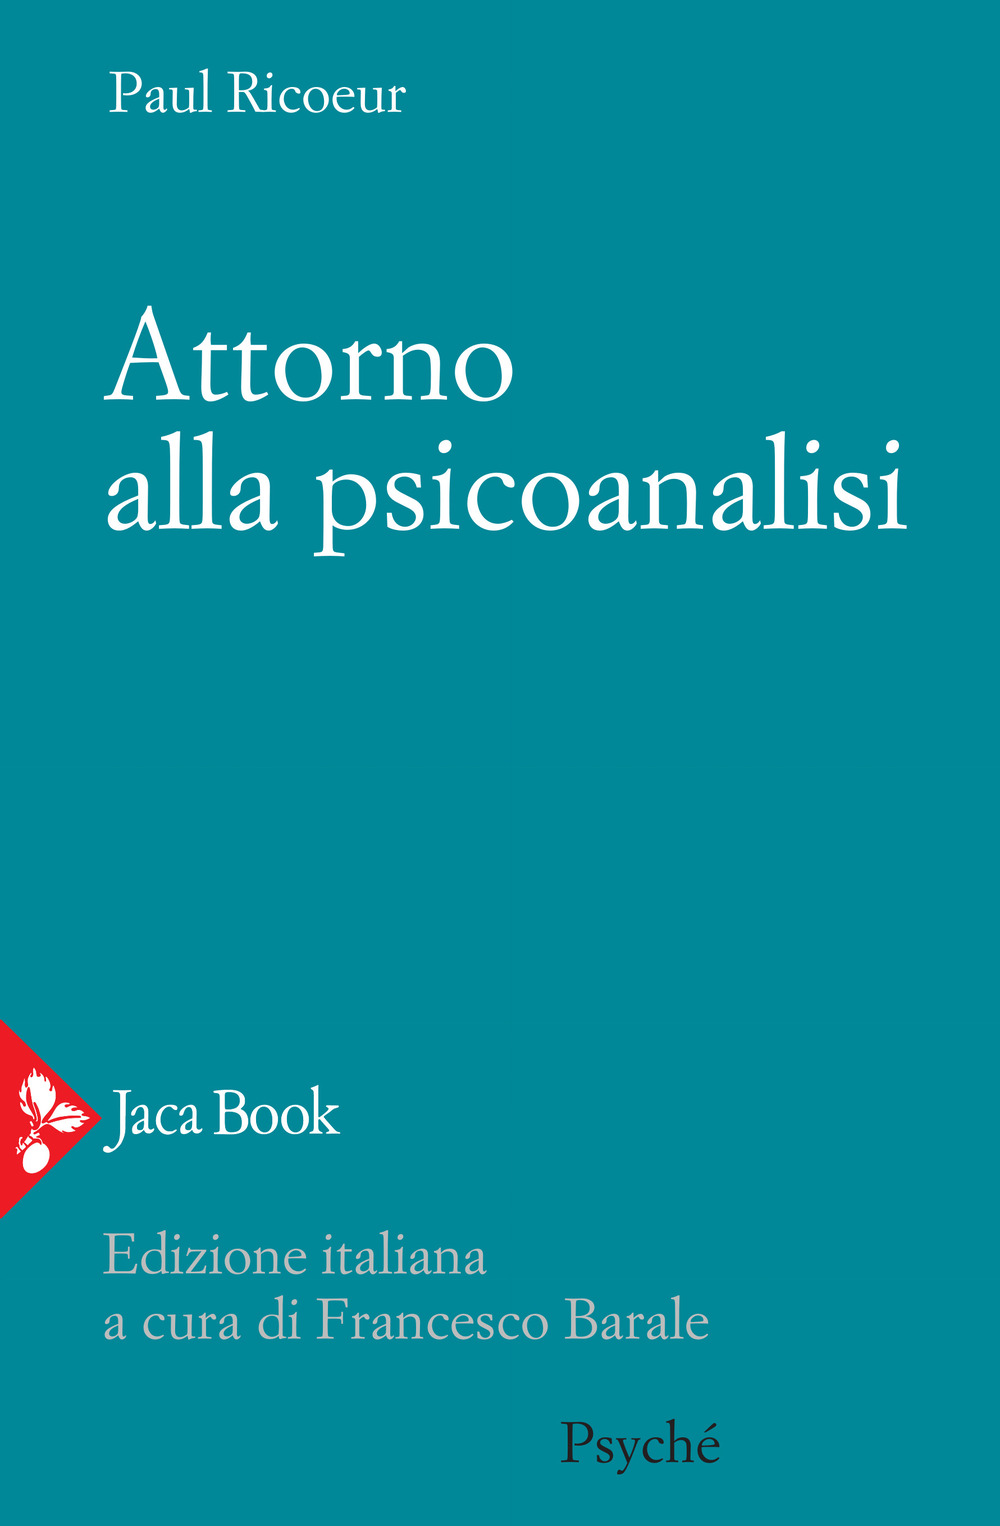 Libri Paul Ricoeur - Attorno Alla Psicoanalisi NUOVO SIGILLATO, EDIZIONE DEL 16/04/2020 SUBITO DISPONIBILE